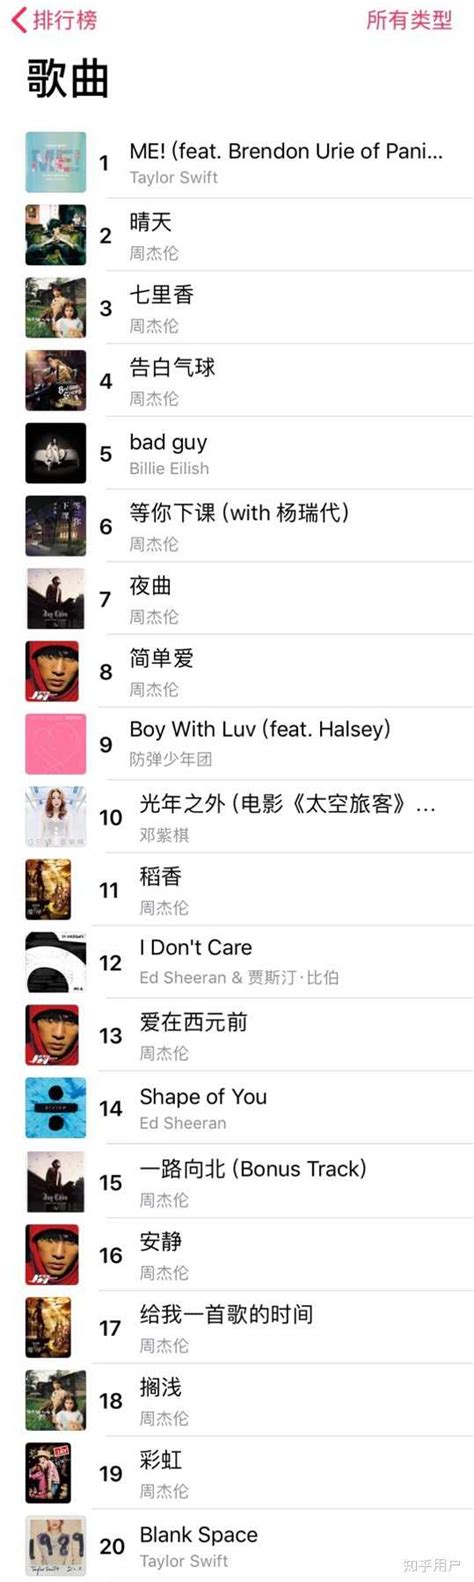 QQ音乐热歌榜前十：流量歌手无一入榜，周杰伦霸榜，华语乐坛的格局早就已经改变了 - 奇点